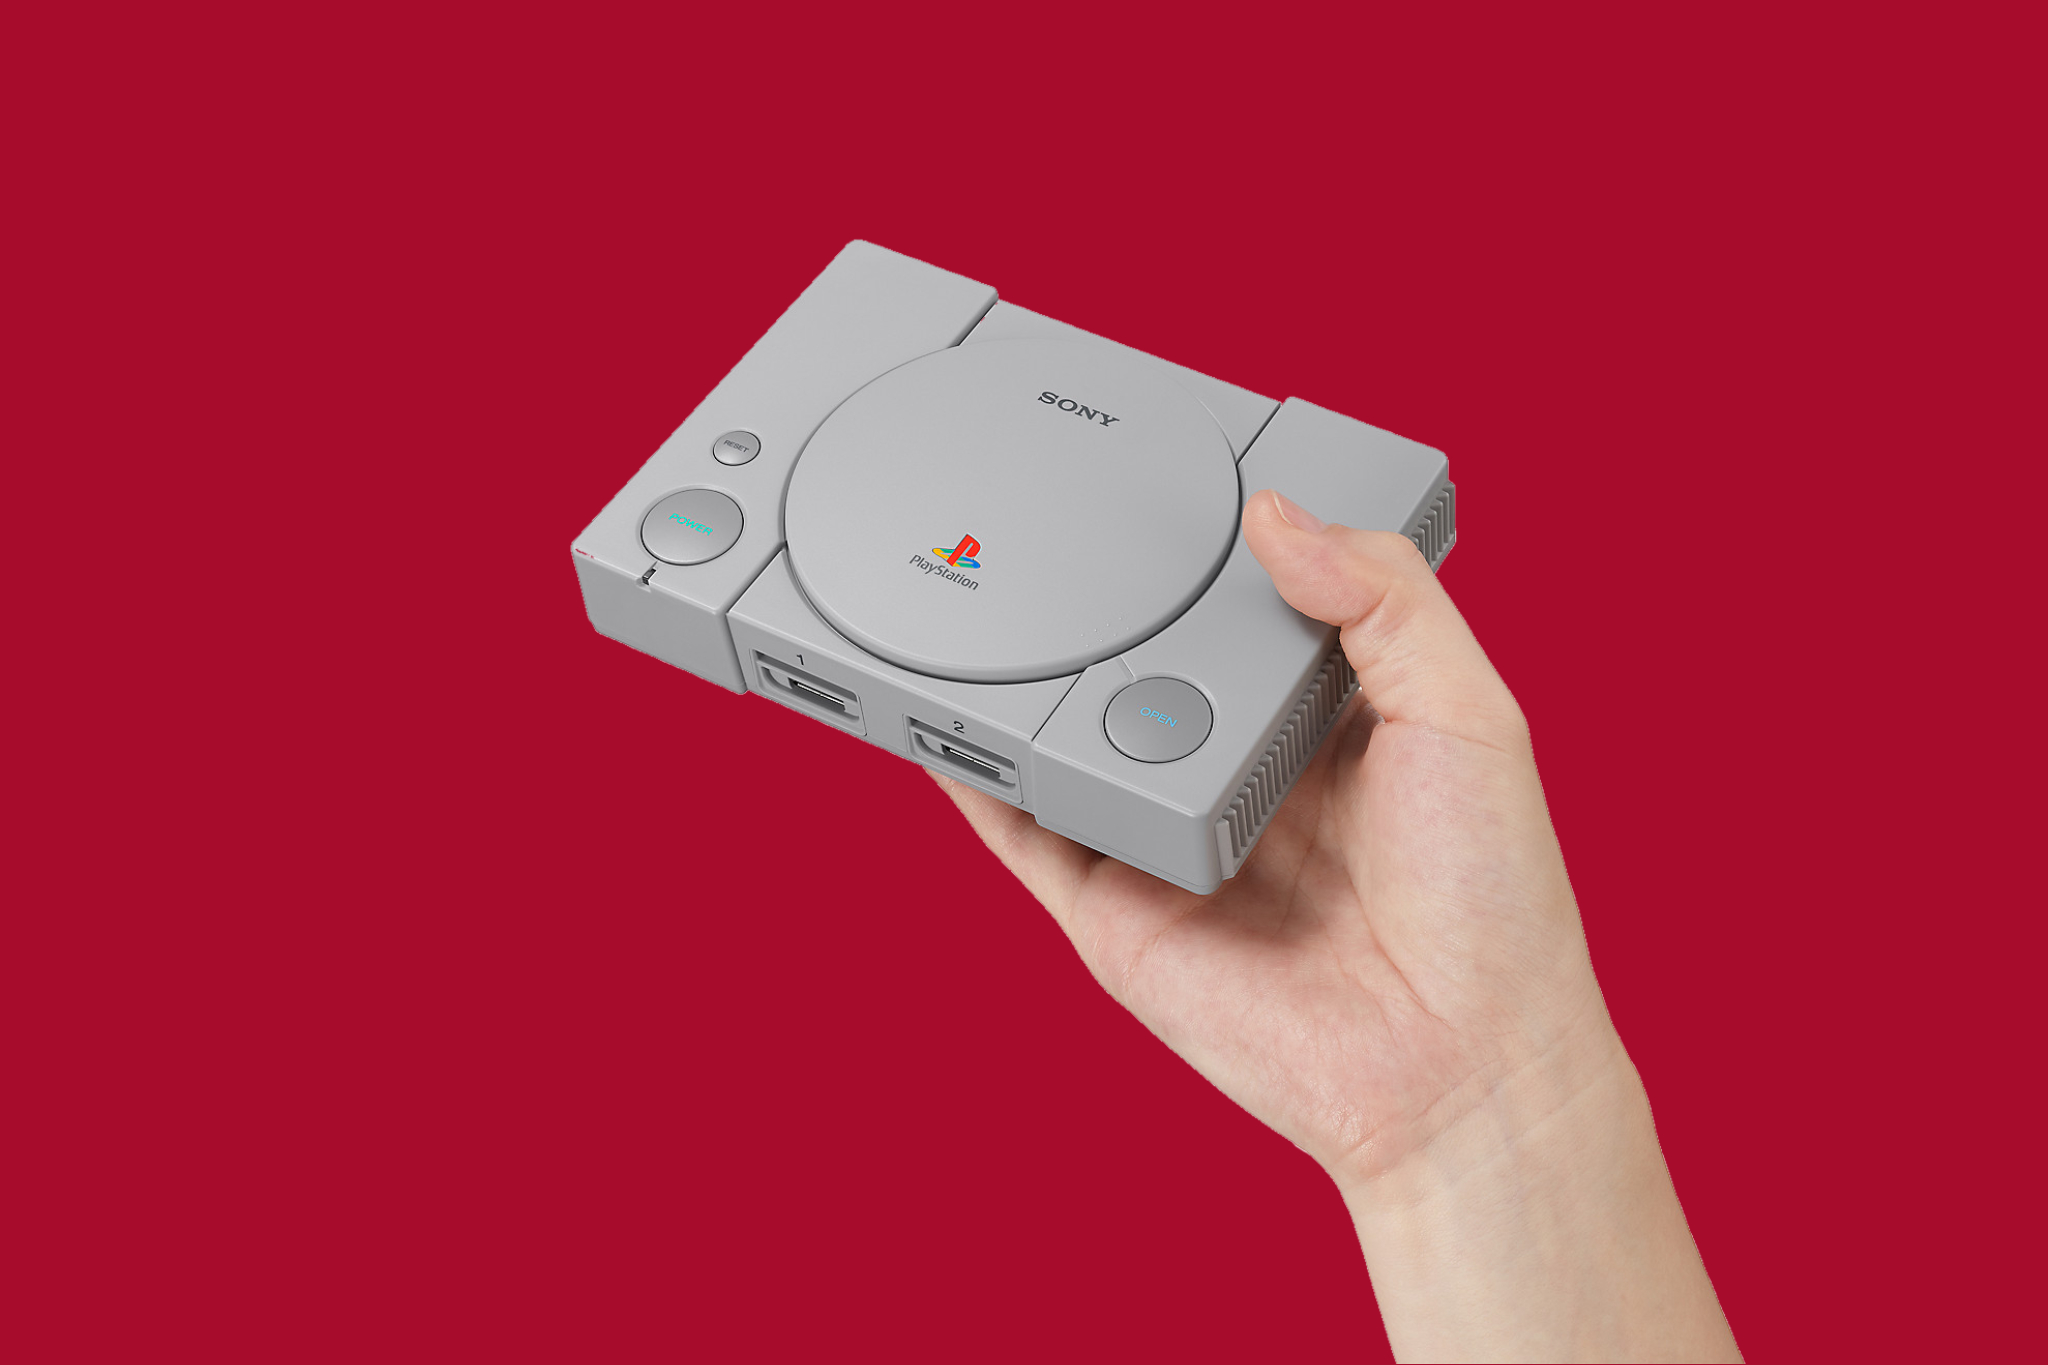 Sony PS Classic. Плейстейшен 1 Классик. Игровая консоль сони плейстейшен 1 мини. PLAYSTATION мини 2023.